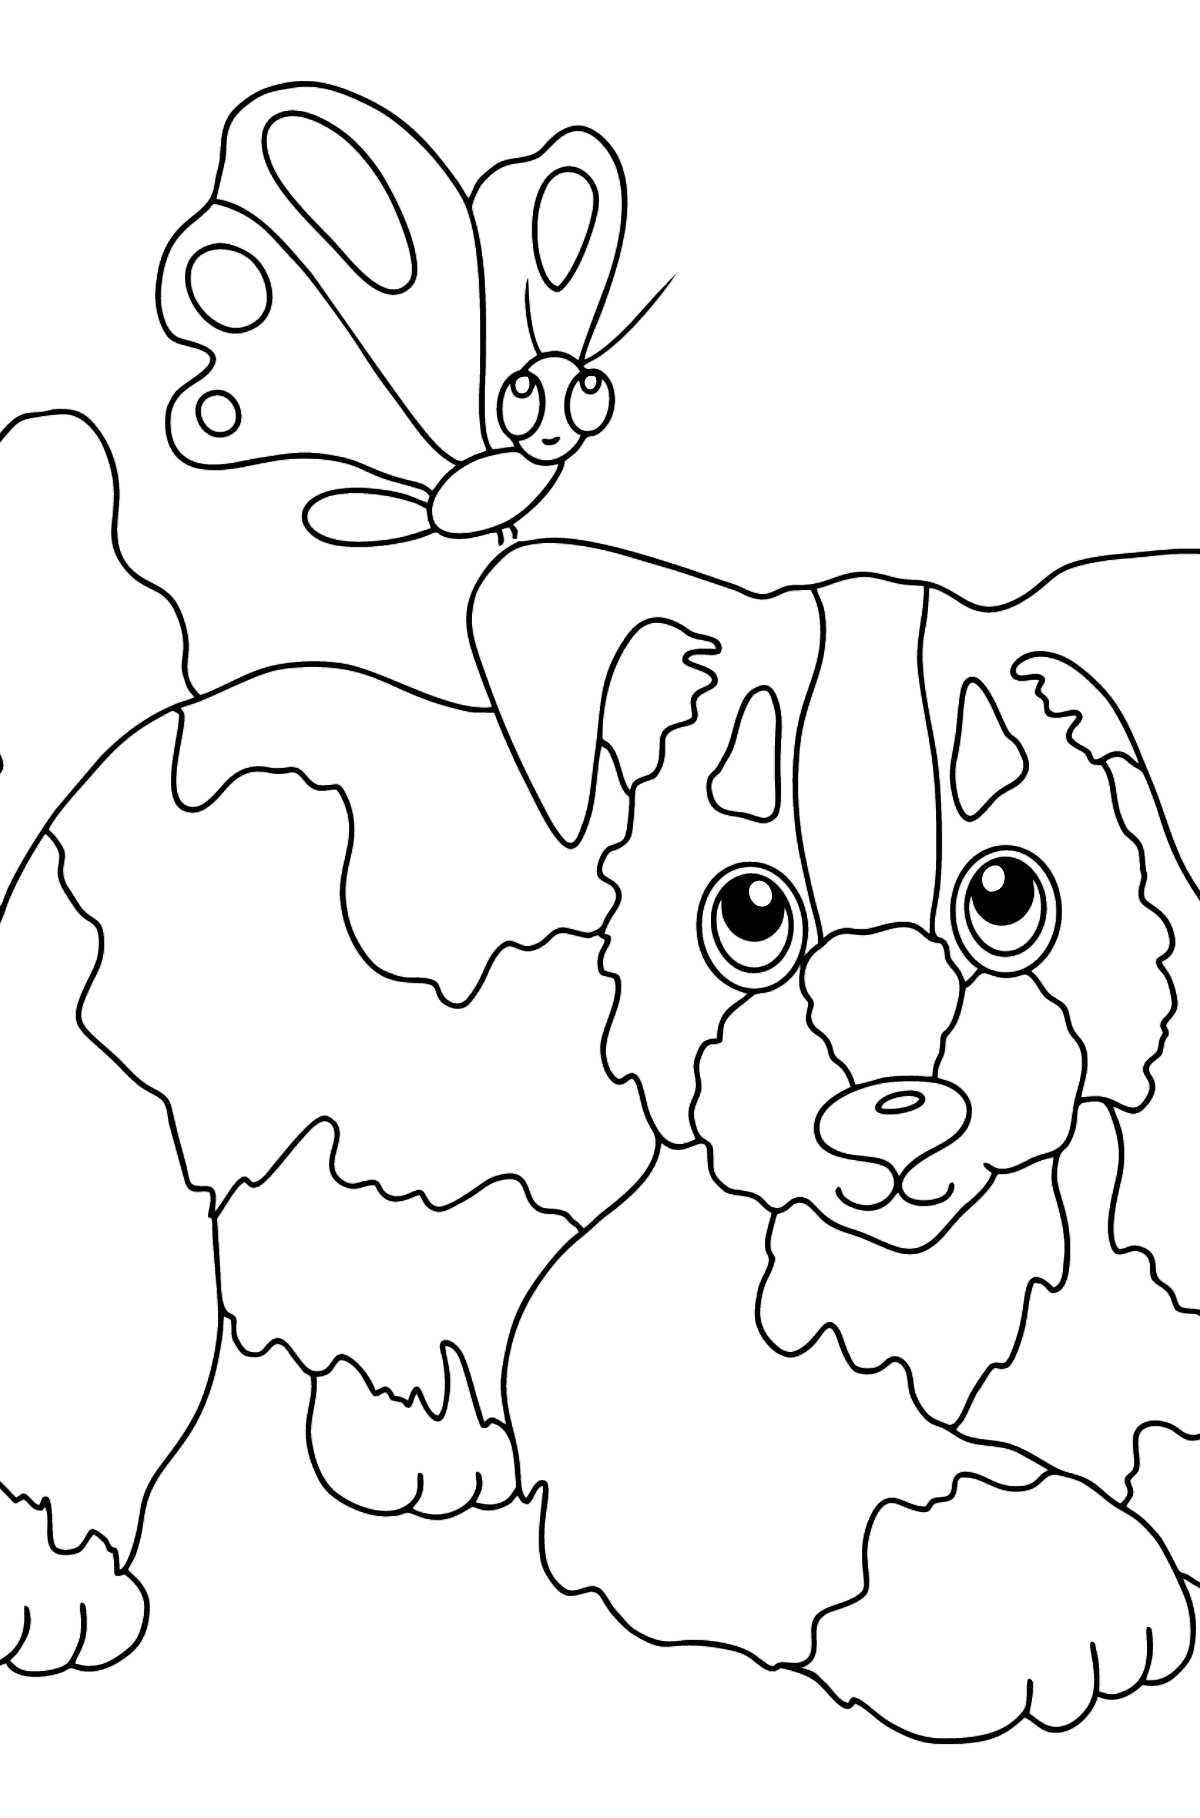 Dibujo para Colorear - Un Perro Jugando con una Hermosa Mariposa - Dibujos para Colorear para Niños